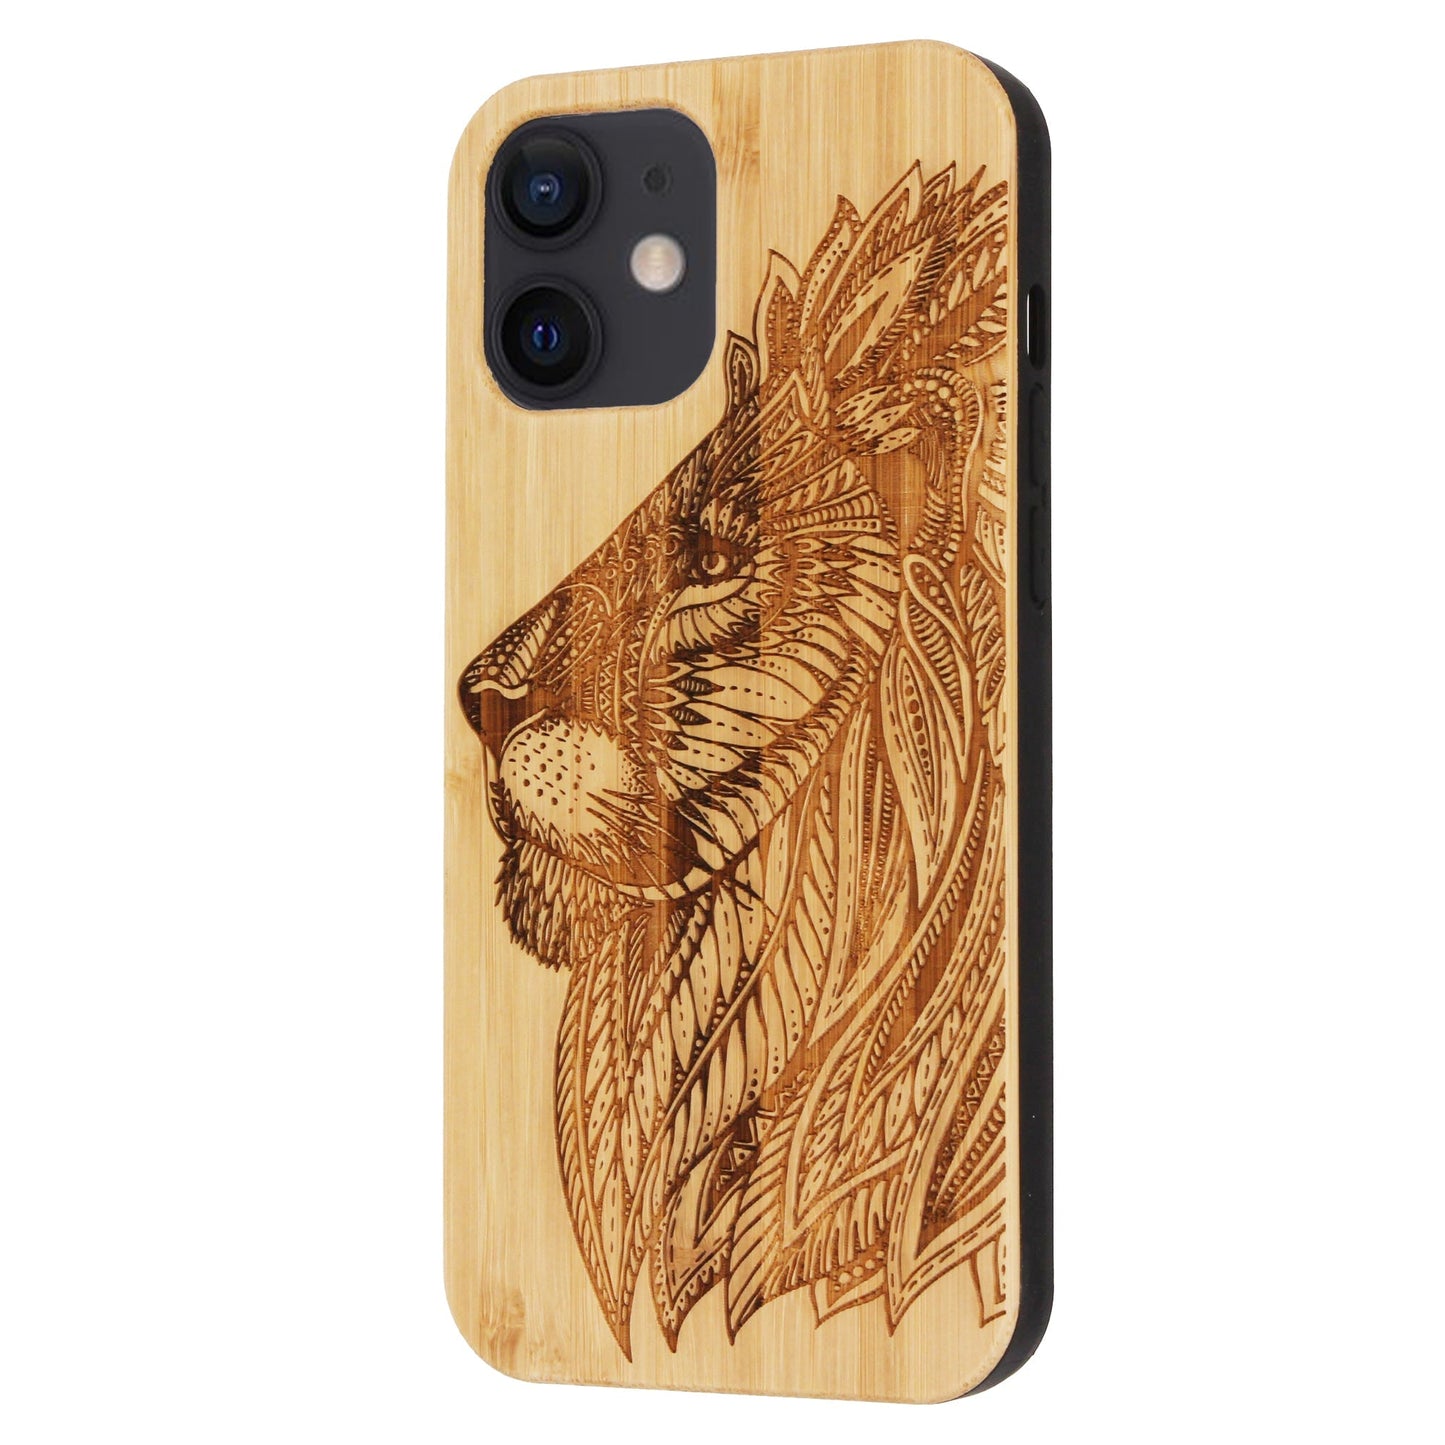 Coque en bambou Lion Eden pour iPhone 12 Mini